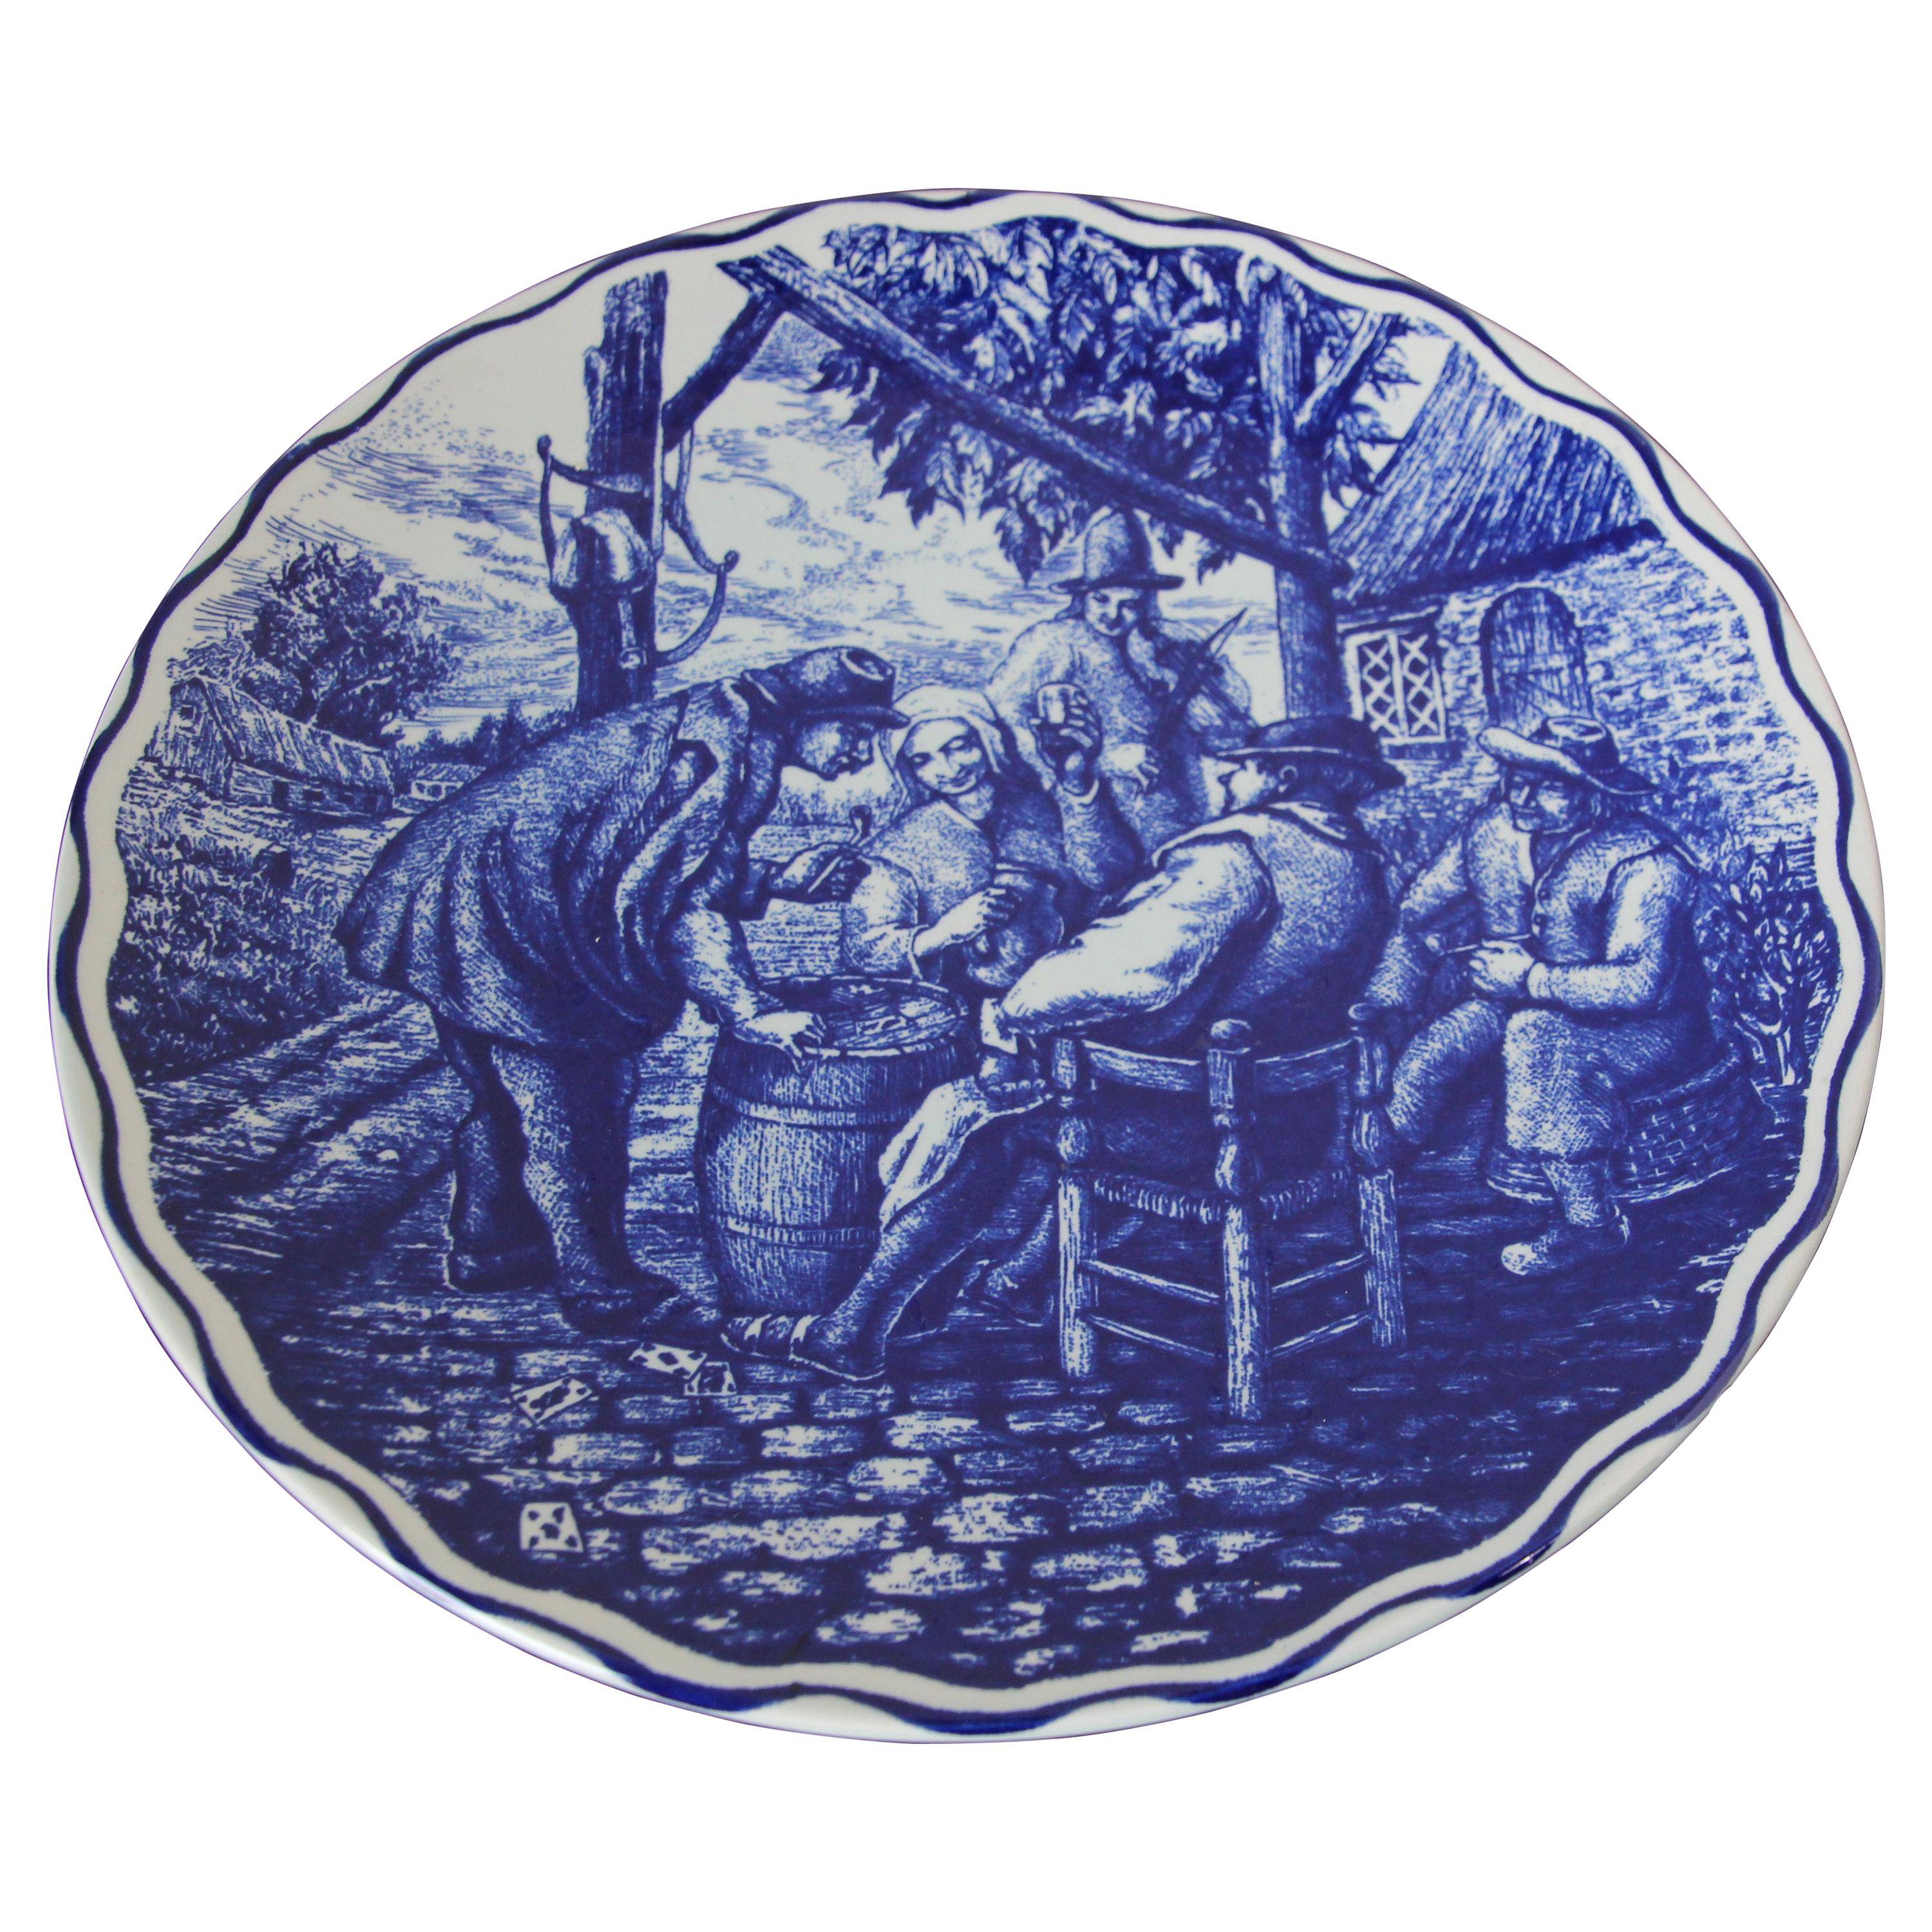 Großer holländischer Delfter Keramikteller mit blauer und weißer Schale